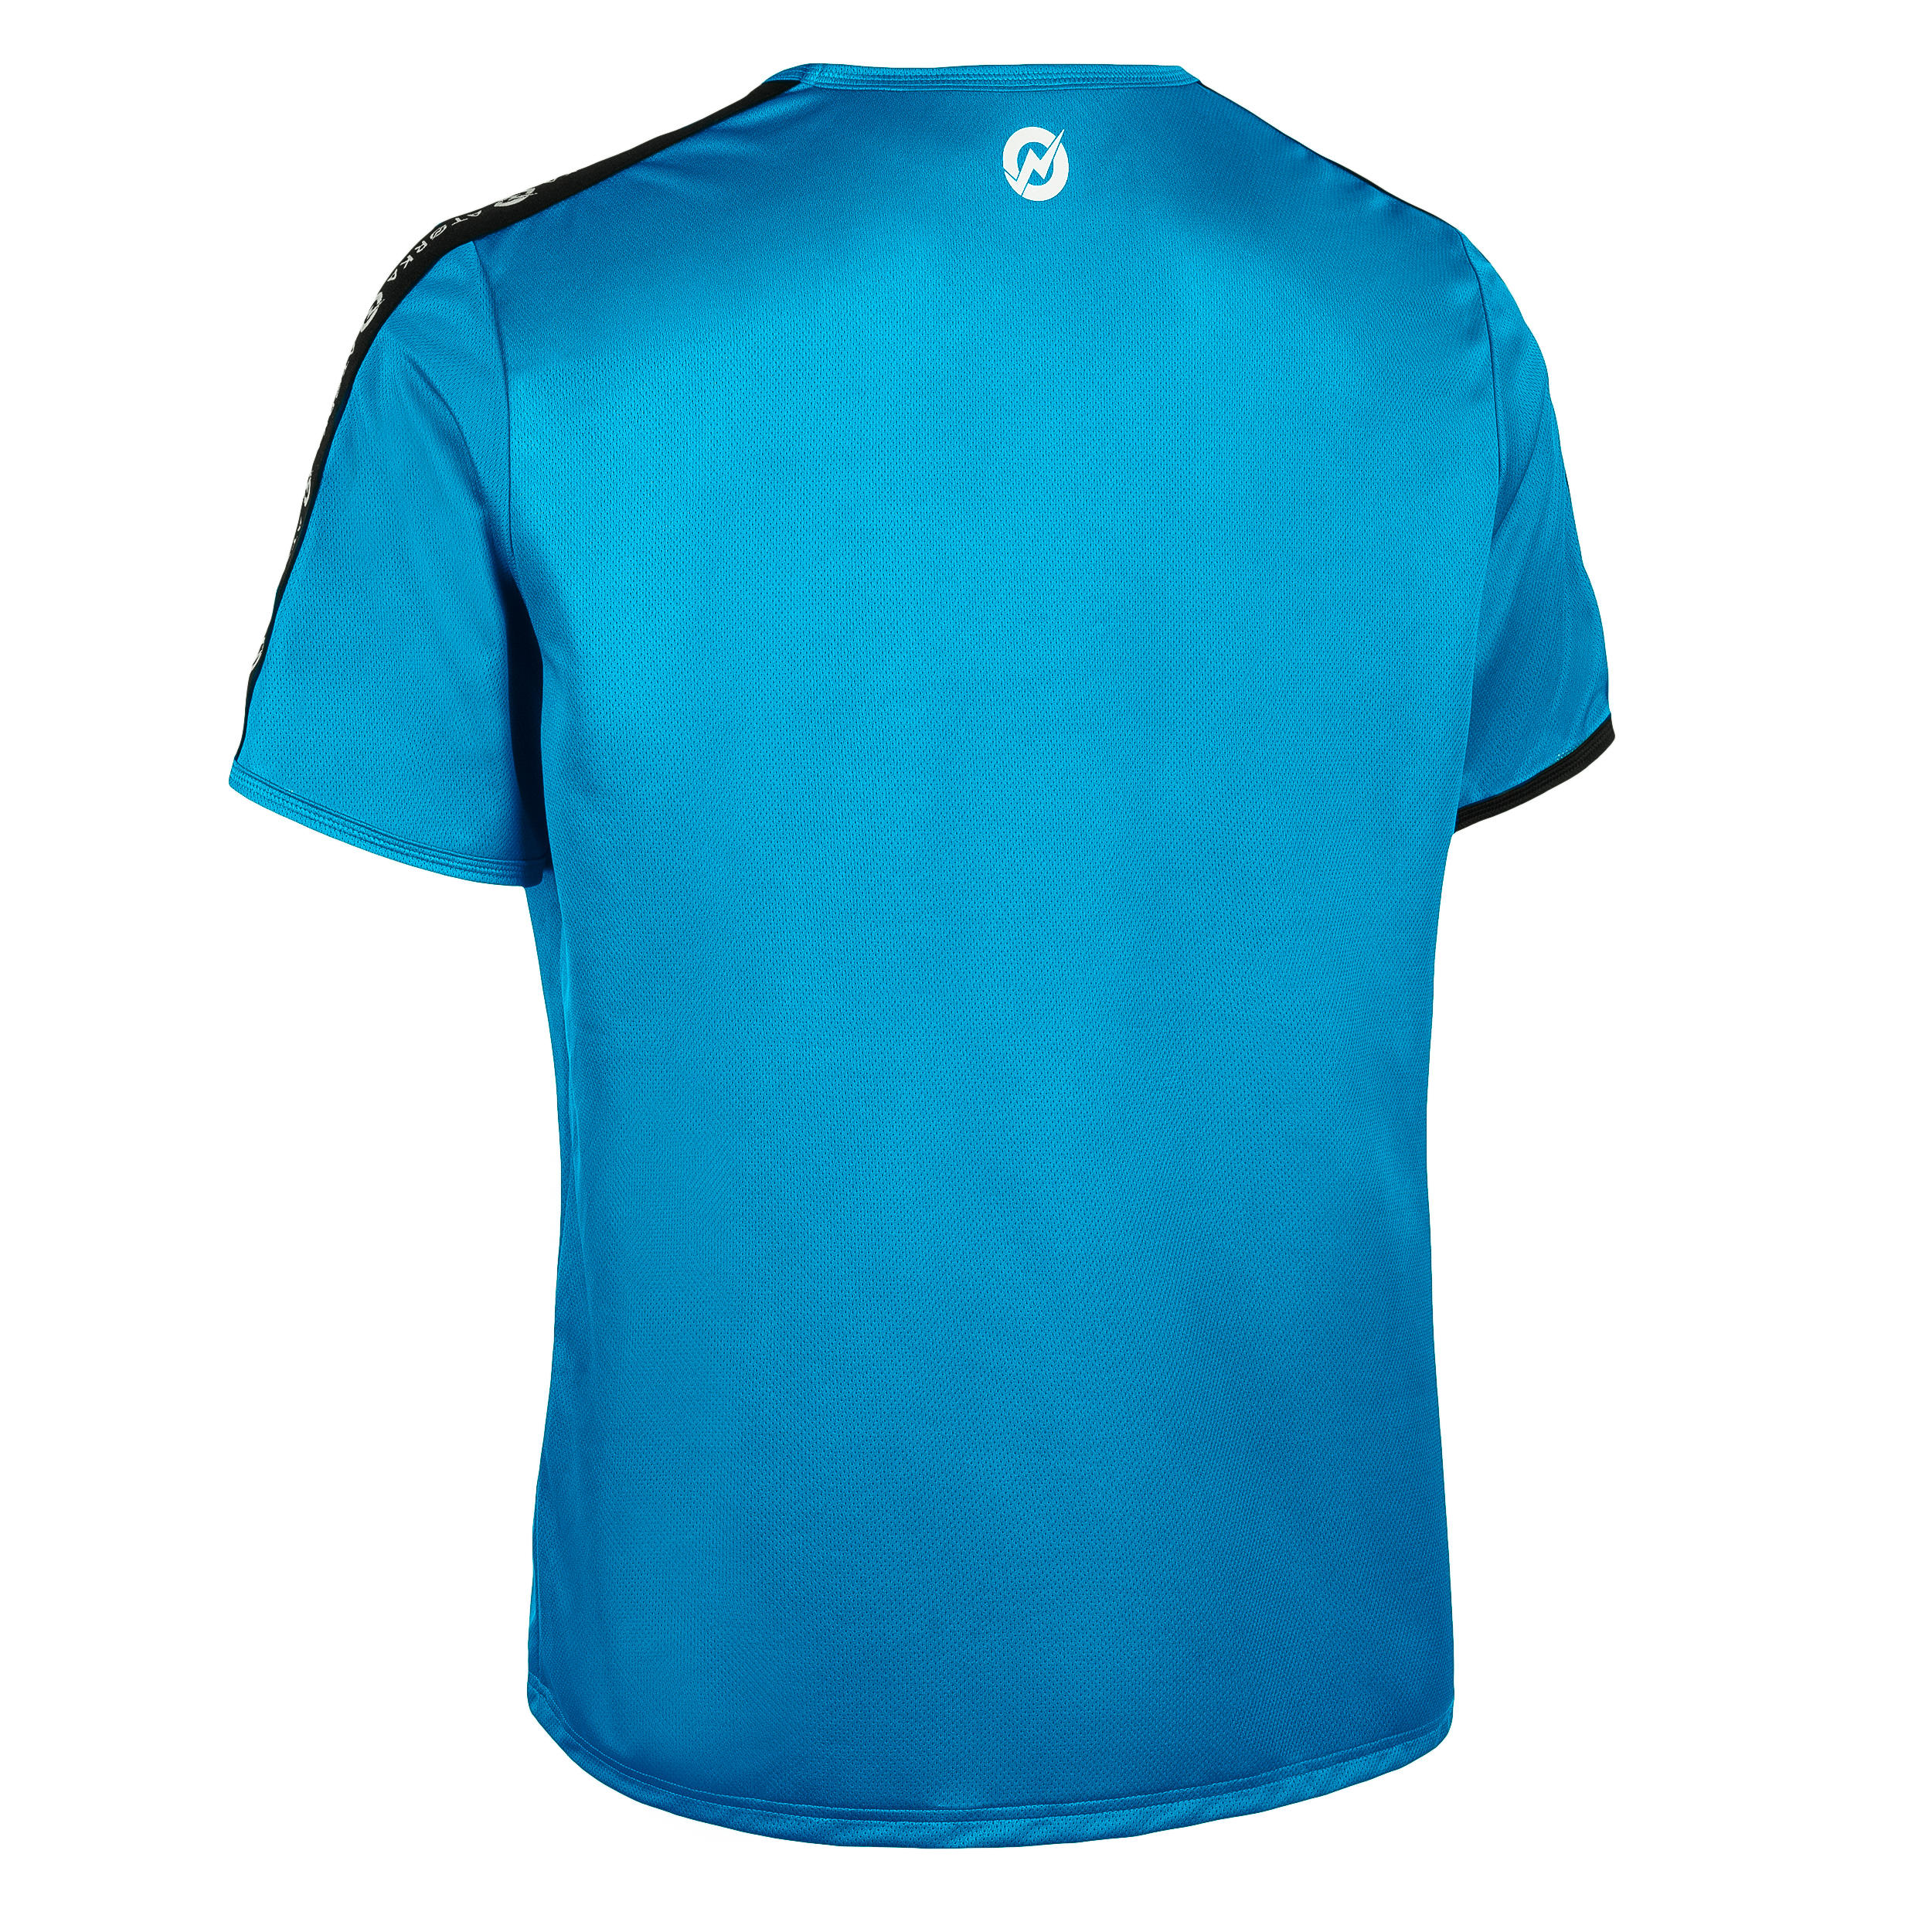 H100C Short-Sleeved Handball Top - Light Blue 2/3